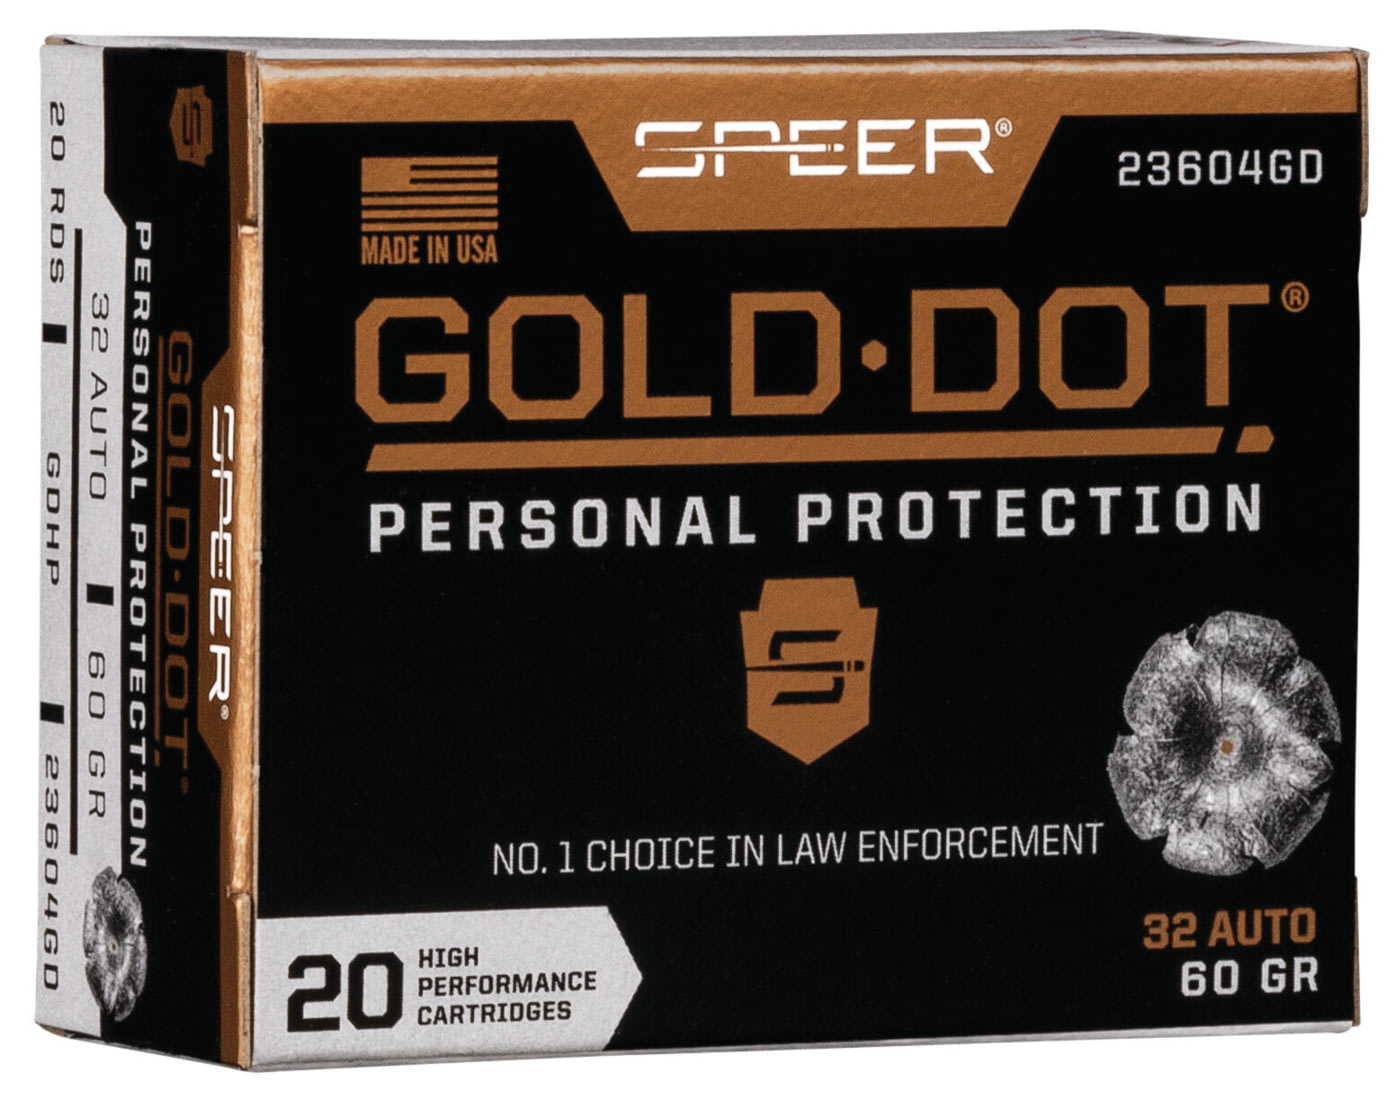 Speer Gold Dot .32 ACP 60 grain Gold Dot Hollow Point Centerfire Pistol Ammunition